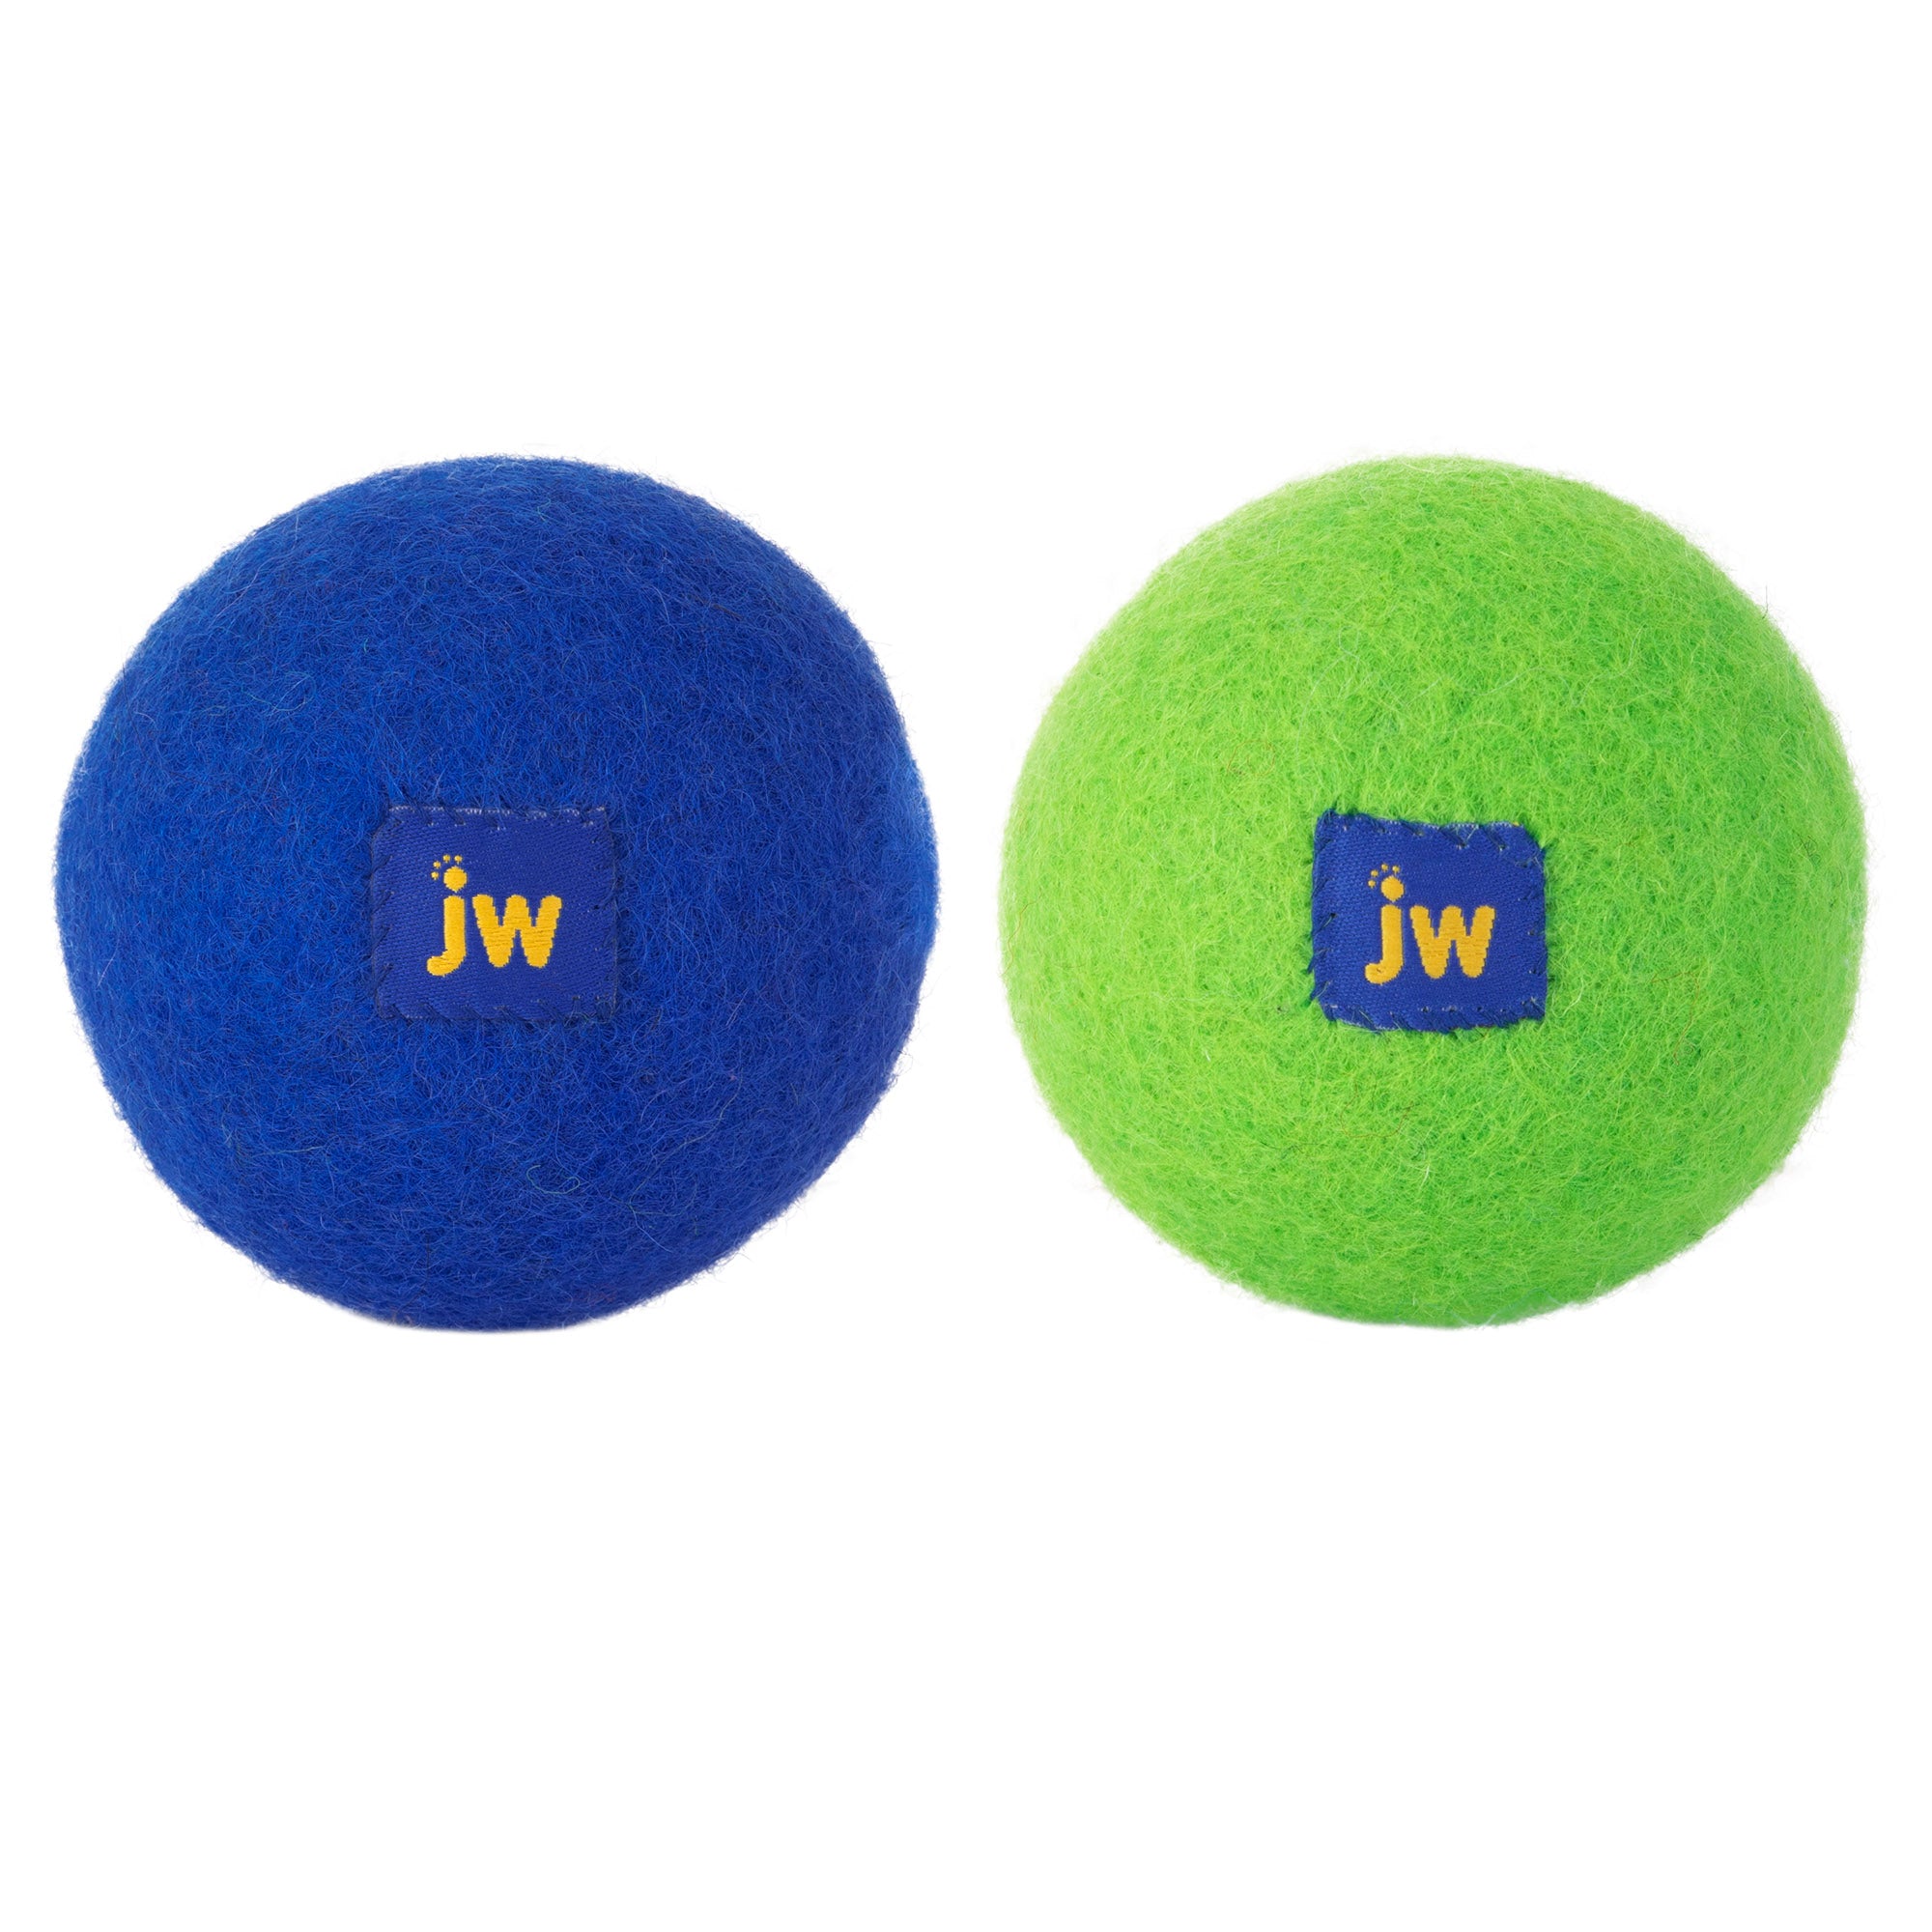 JW Wool-ee Ball. SKUS: 32489